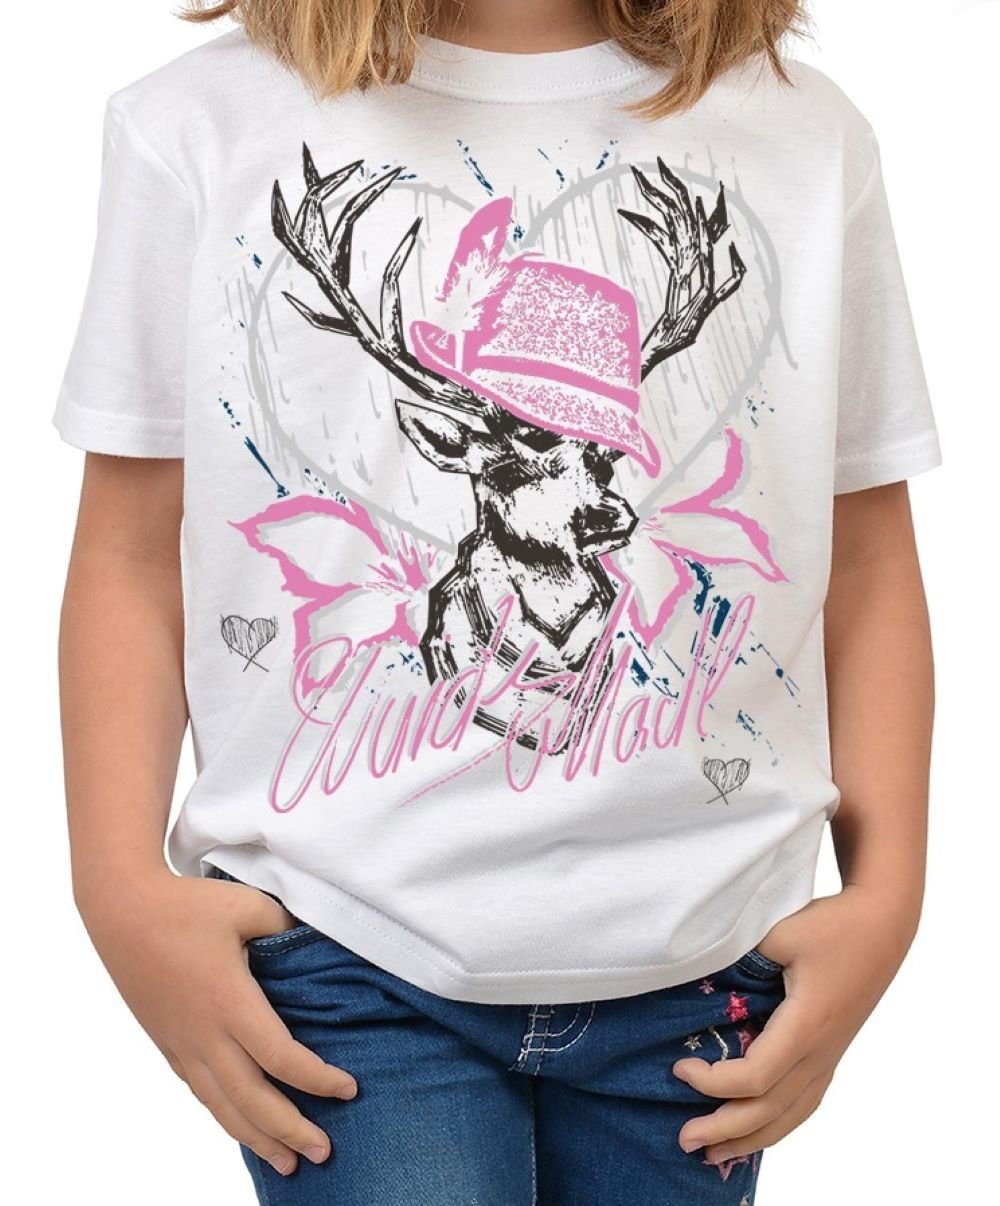 (Hut Trachten : für Shirts Madl T-Shirt Wuids Kindershirt rosa) Tini T-Shirt Trachten Mädchen - Volksfest Mädchen